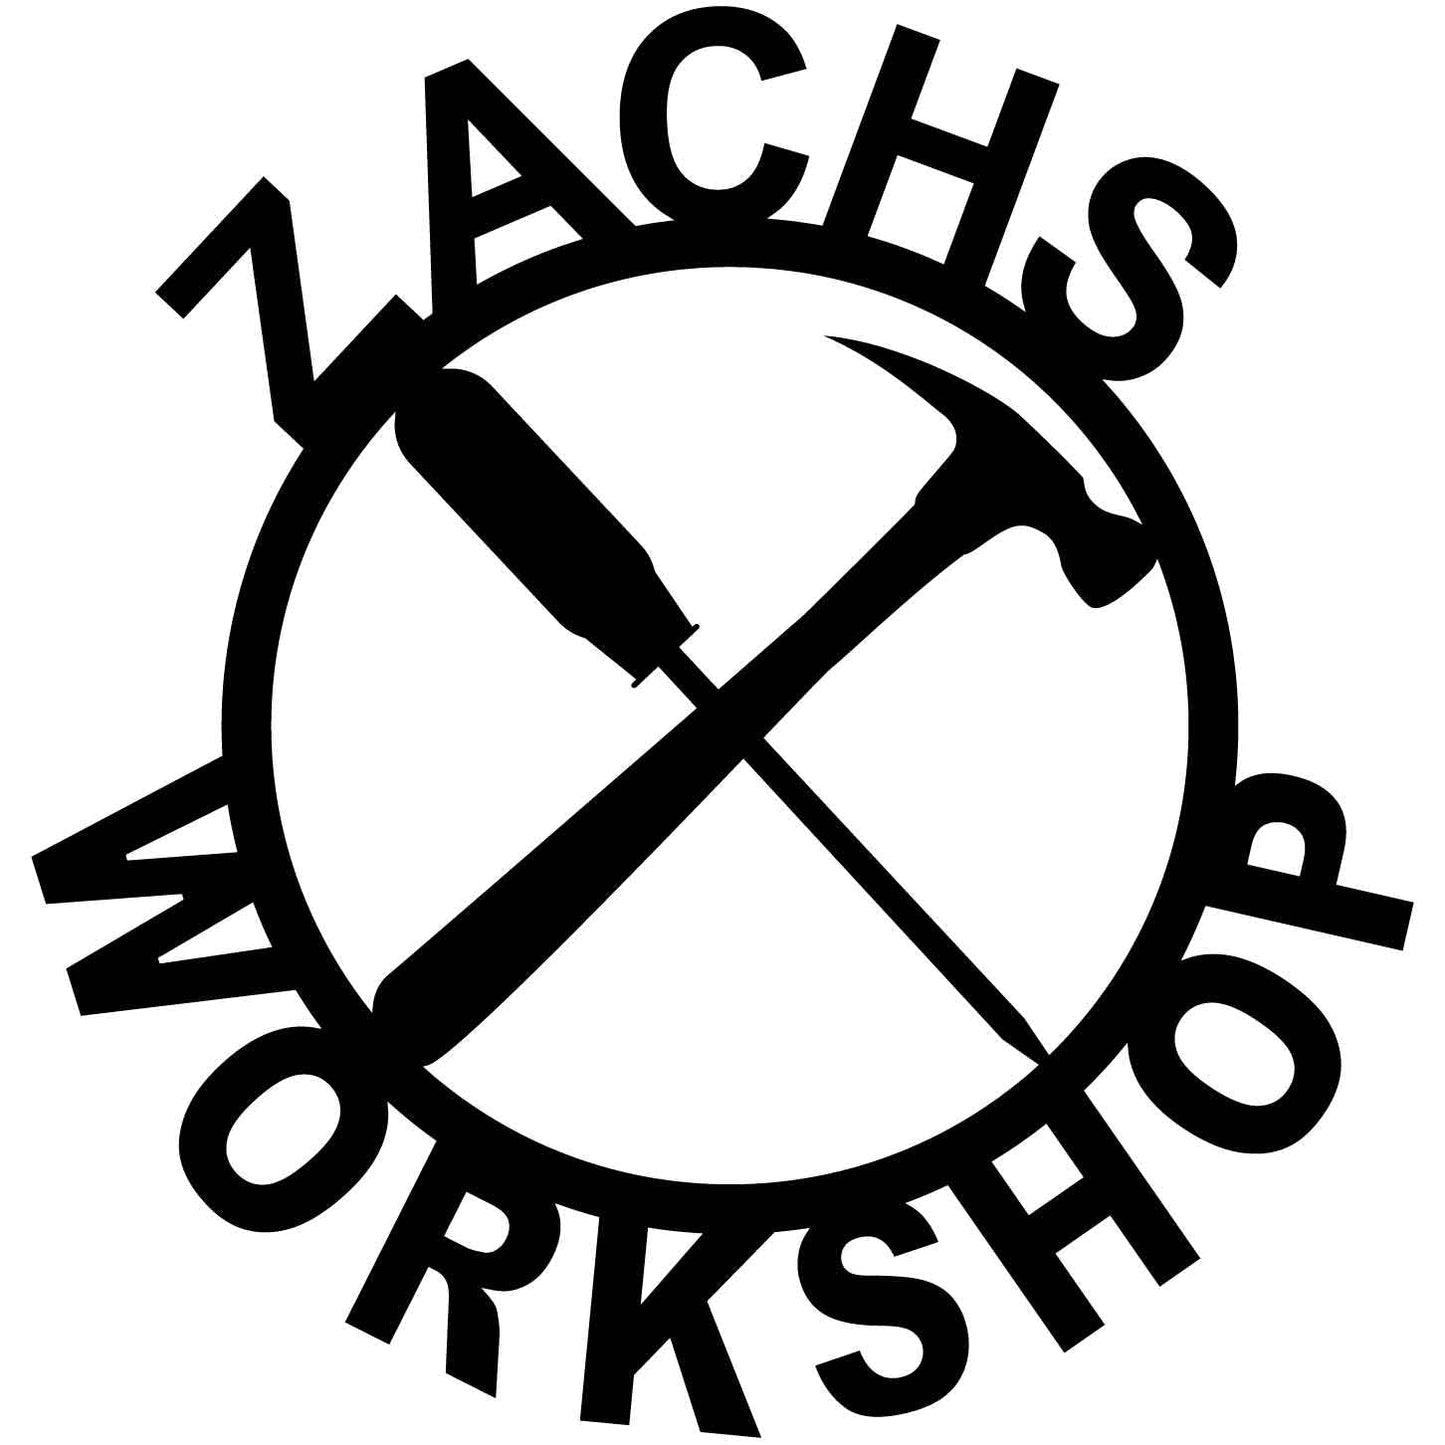 ZACHS WORKSHOP-dxf file cut ready for cnc machine-dxfforcnc.com